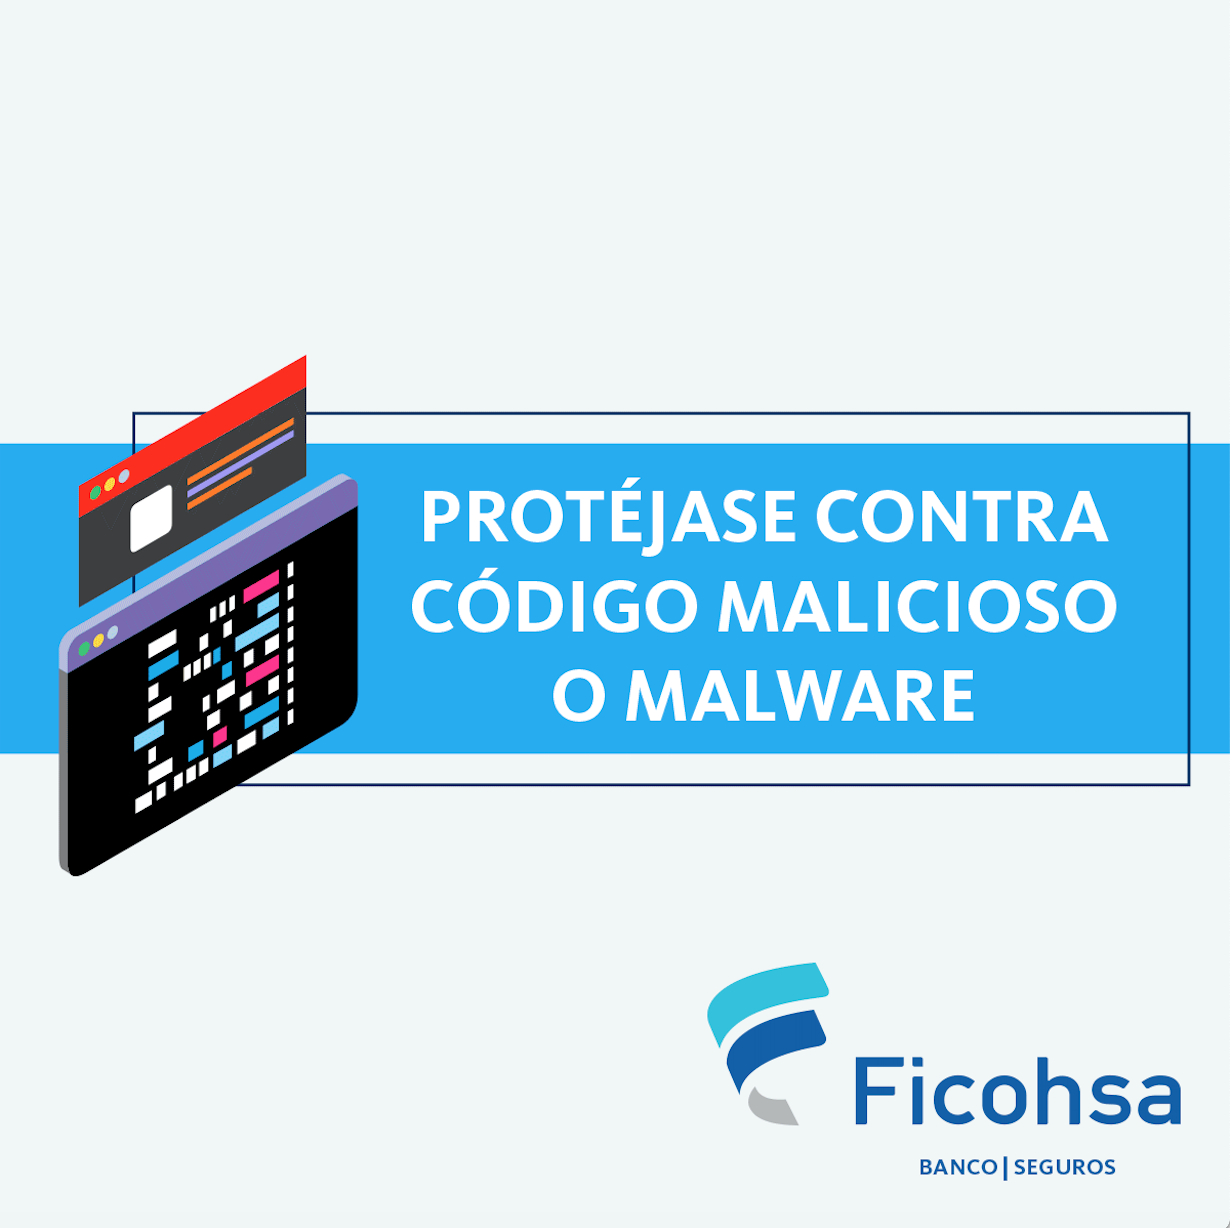 Protéjase contra código maliciosos o malware